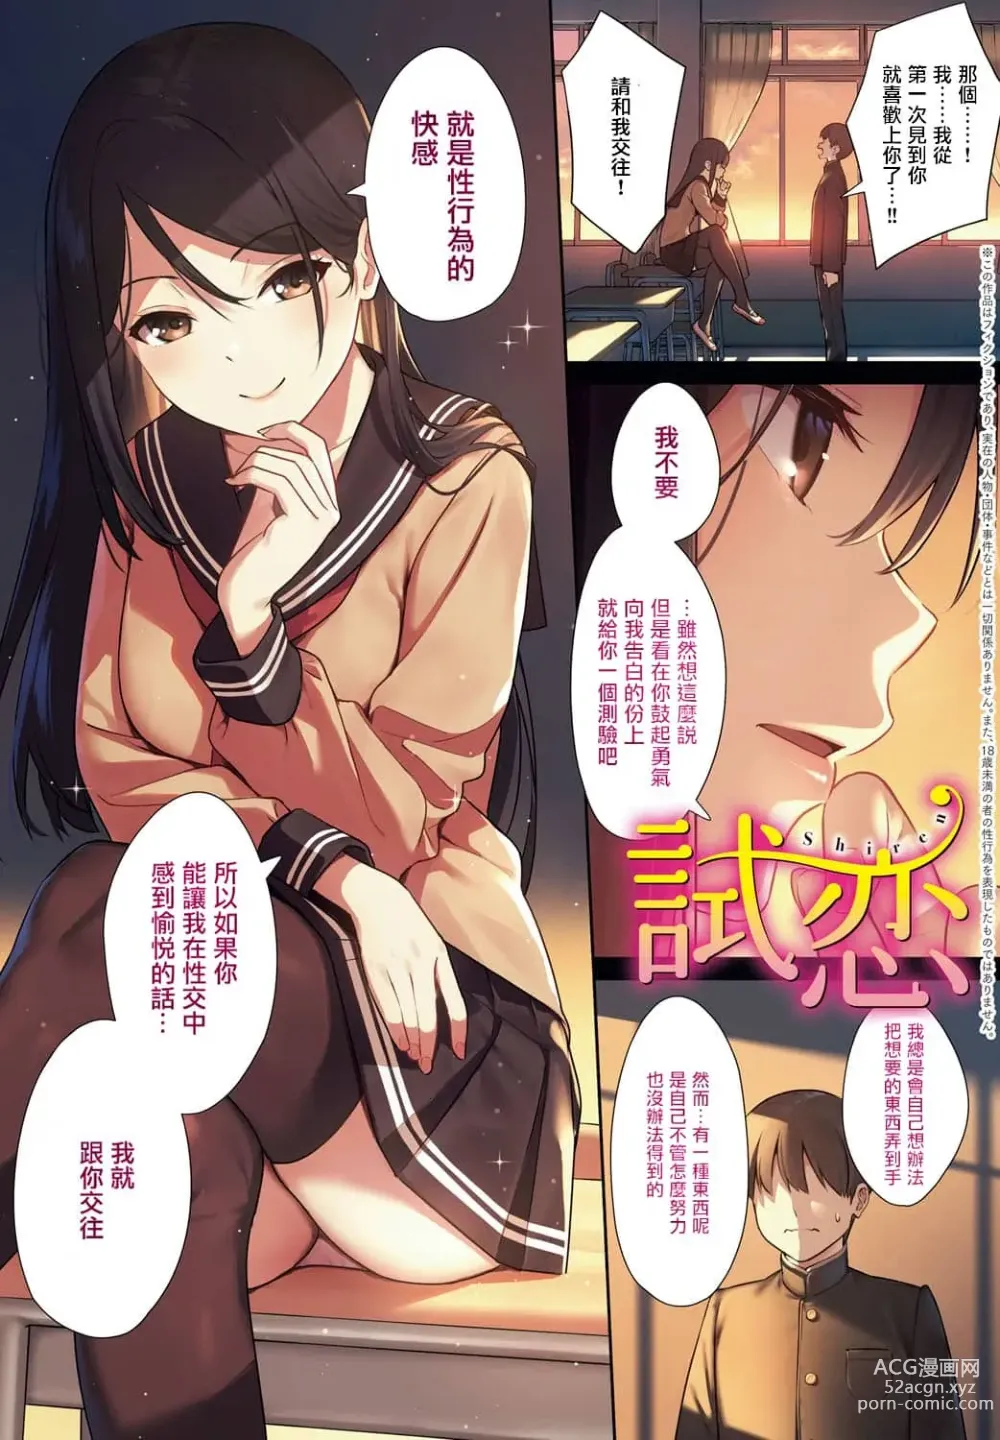 Page 4 of manga Honki ni Shichatte, Ii desu yo. + Digital Tokusouban Gentei Tokuten Kara Kano! FD